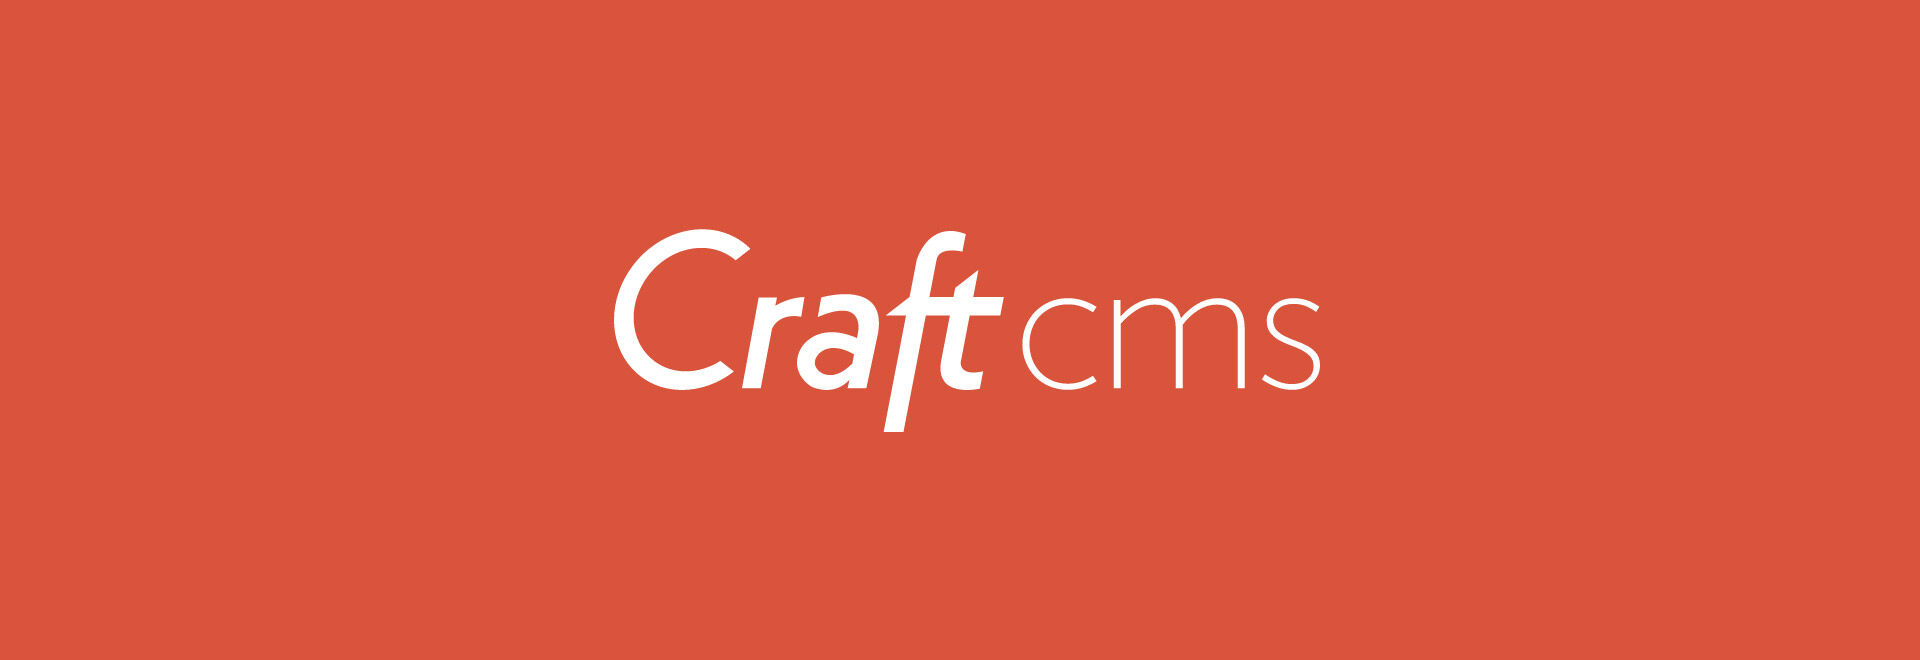 craft cms redactor html button hidden